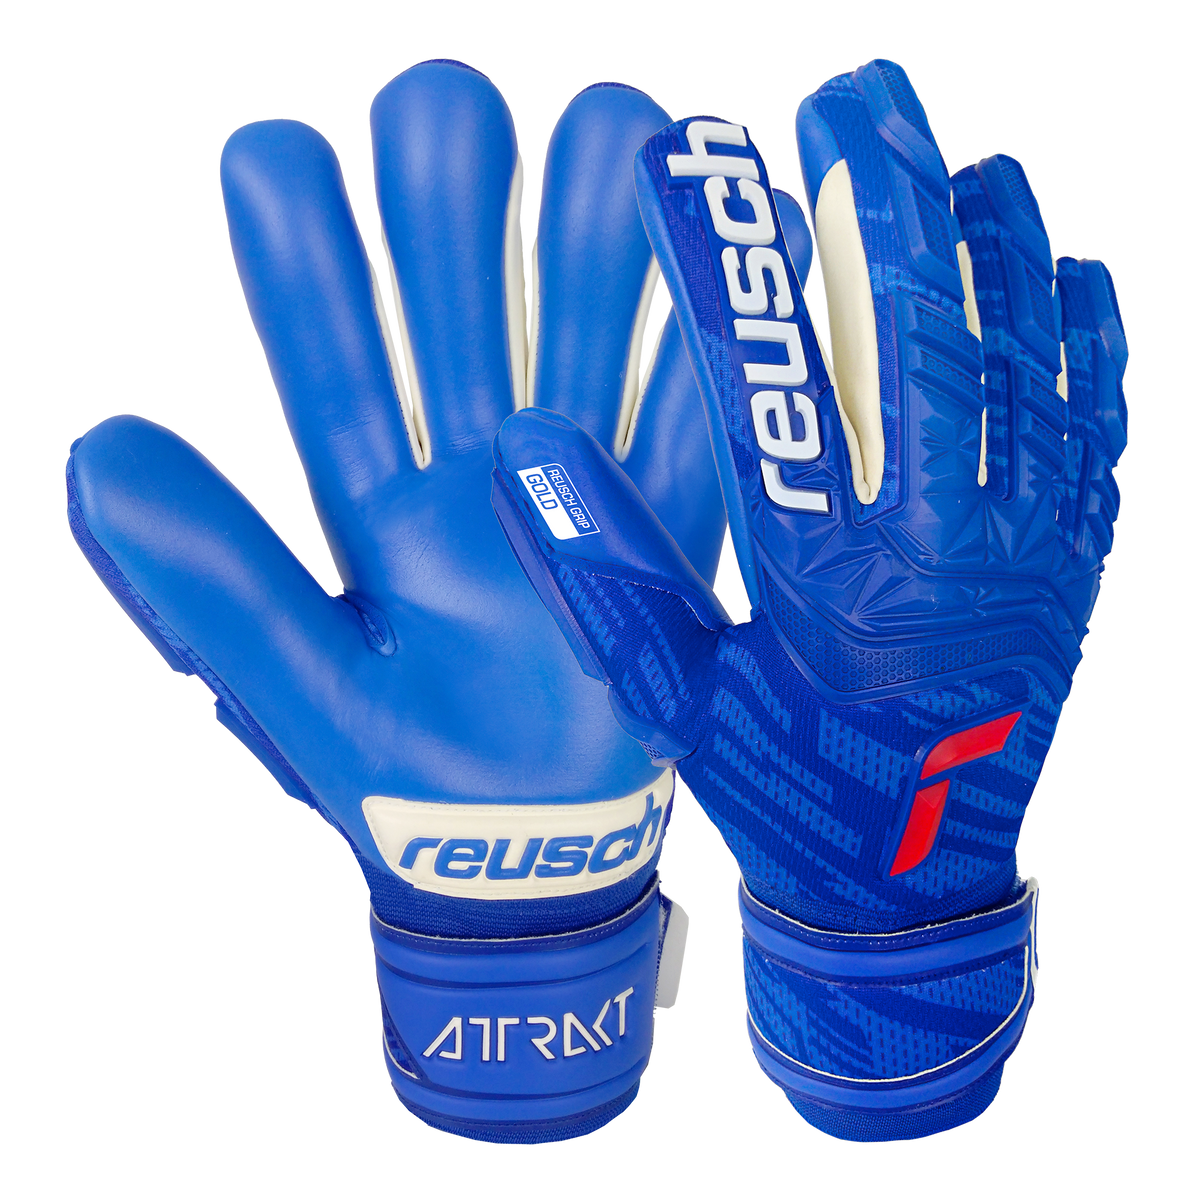 Reusch Attrakt Freegel Goalkeeper Gloves